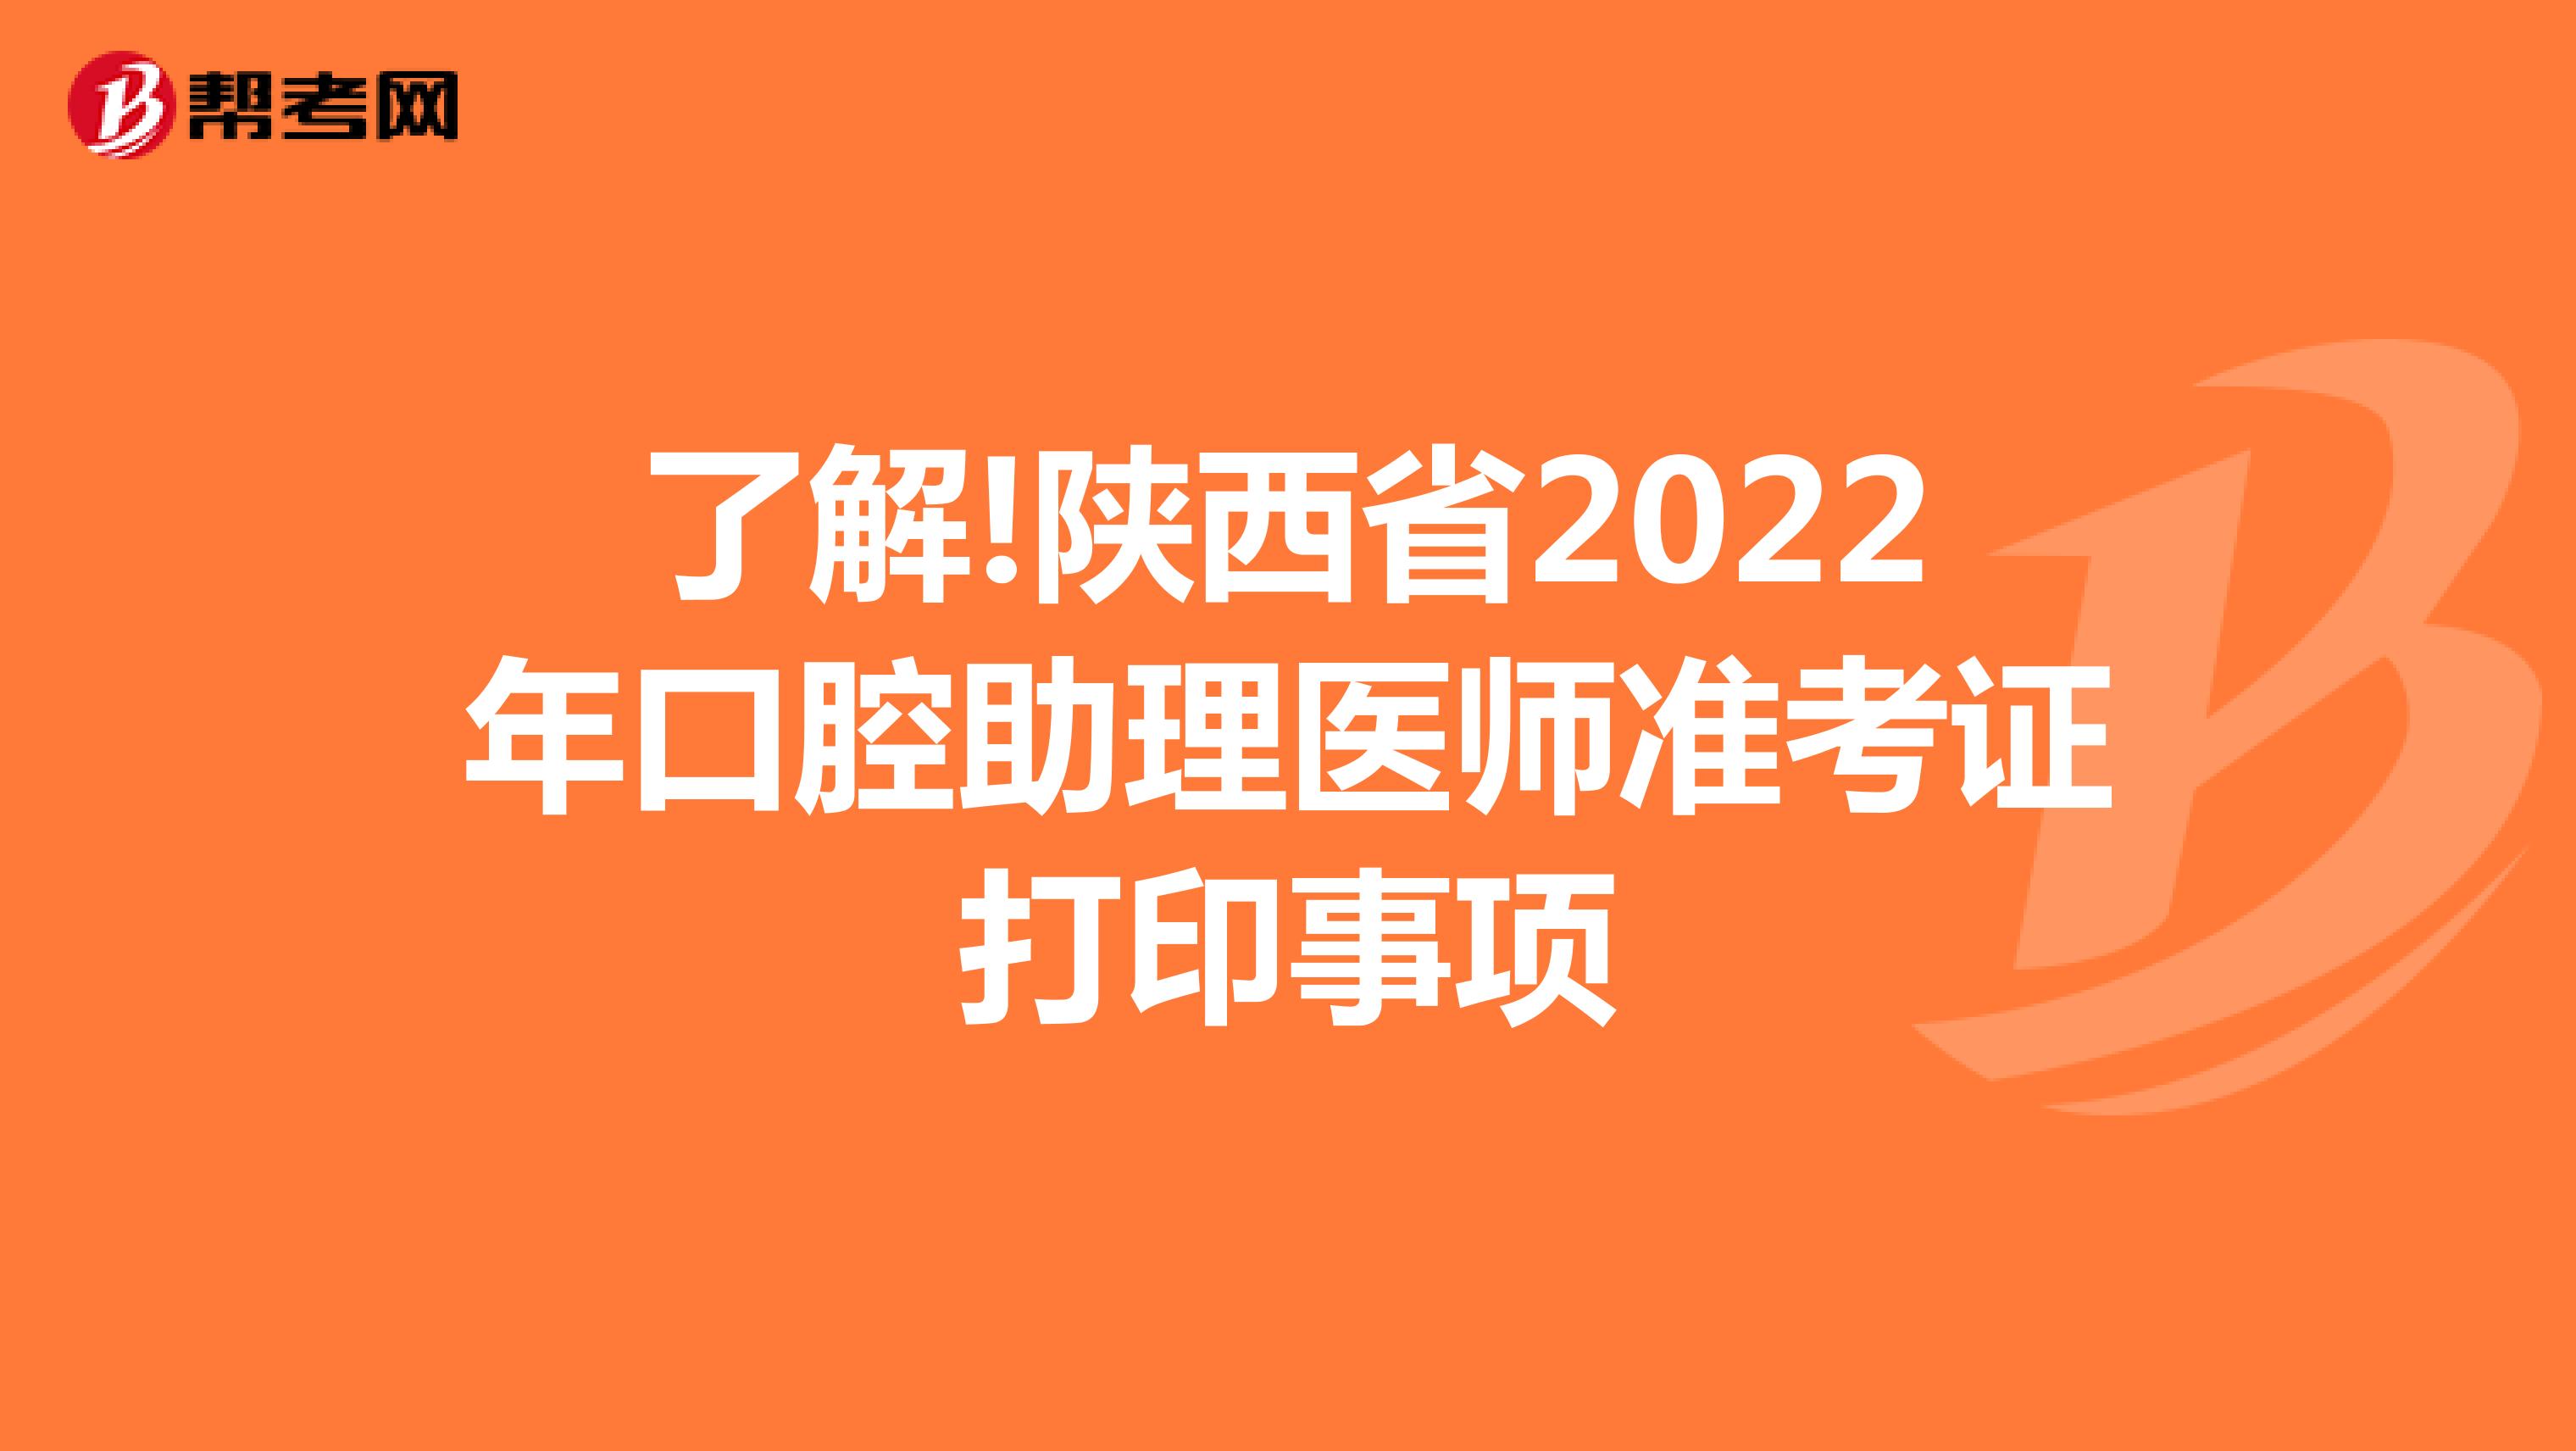 了解!陕西省2022年口腔助理医师准考证打印事项